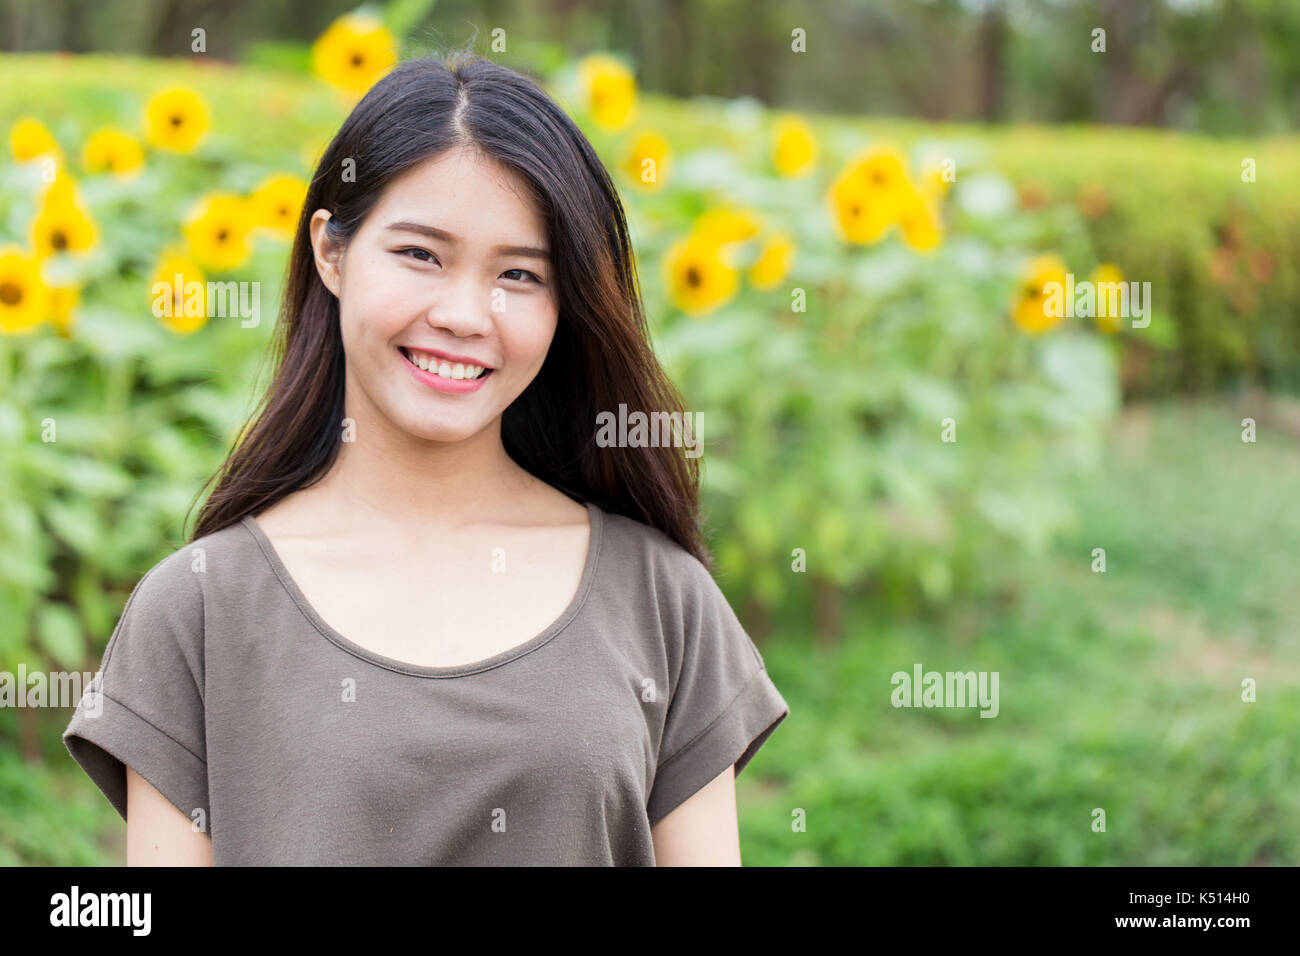 Cute portrait asiatische Thai jugendlich Lächeln mit Sonnenblumen mit kopieren. Stockfoto